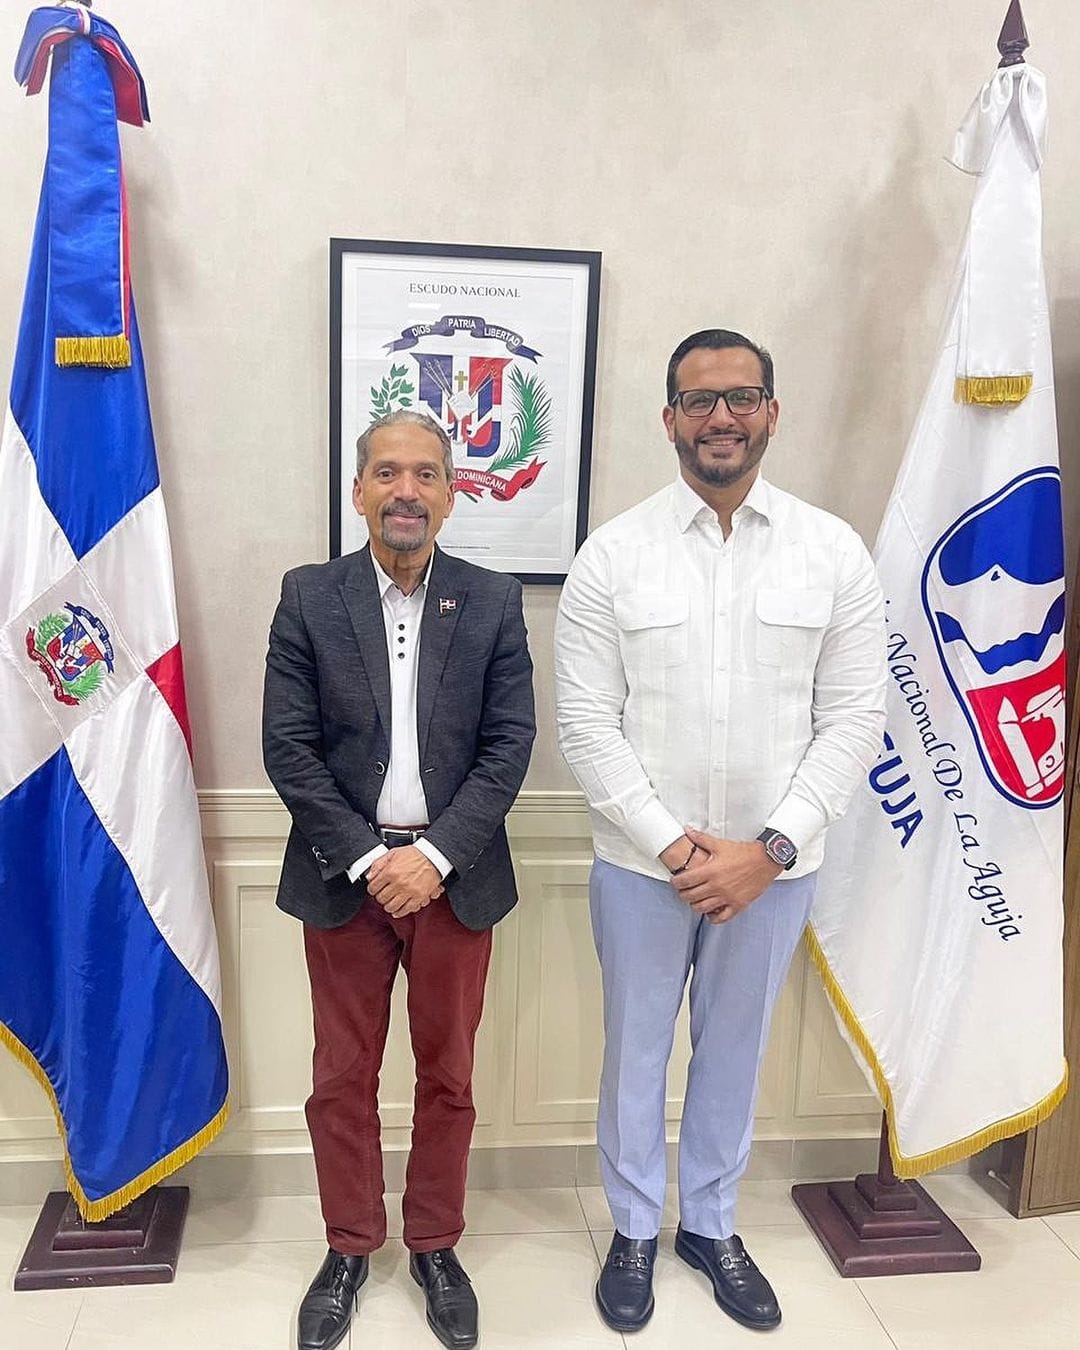 El presidente de CPEP Juan Pablo Uribe en su visita al director ejecutivo de INAGUJA Paul Almanzar Hued donde conversaron temas de interés para ambas instituciones.